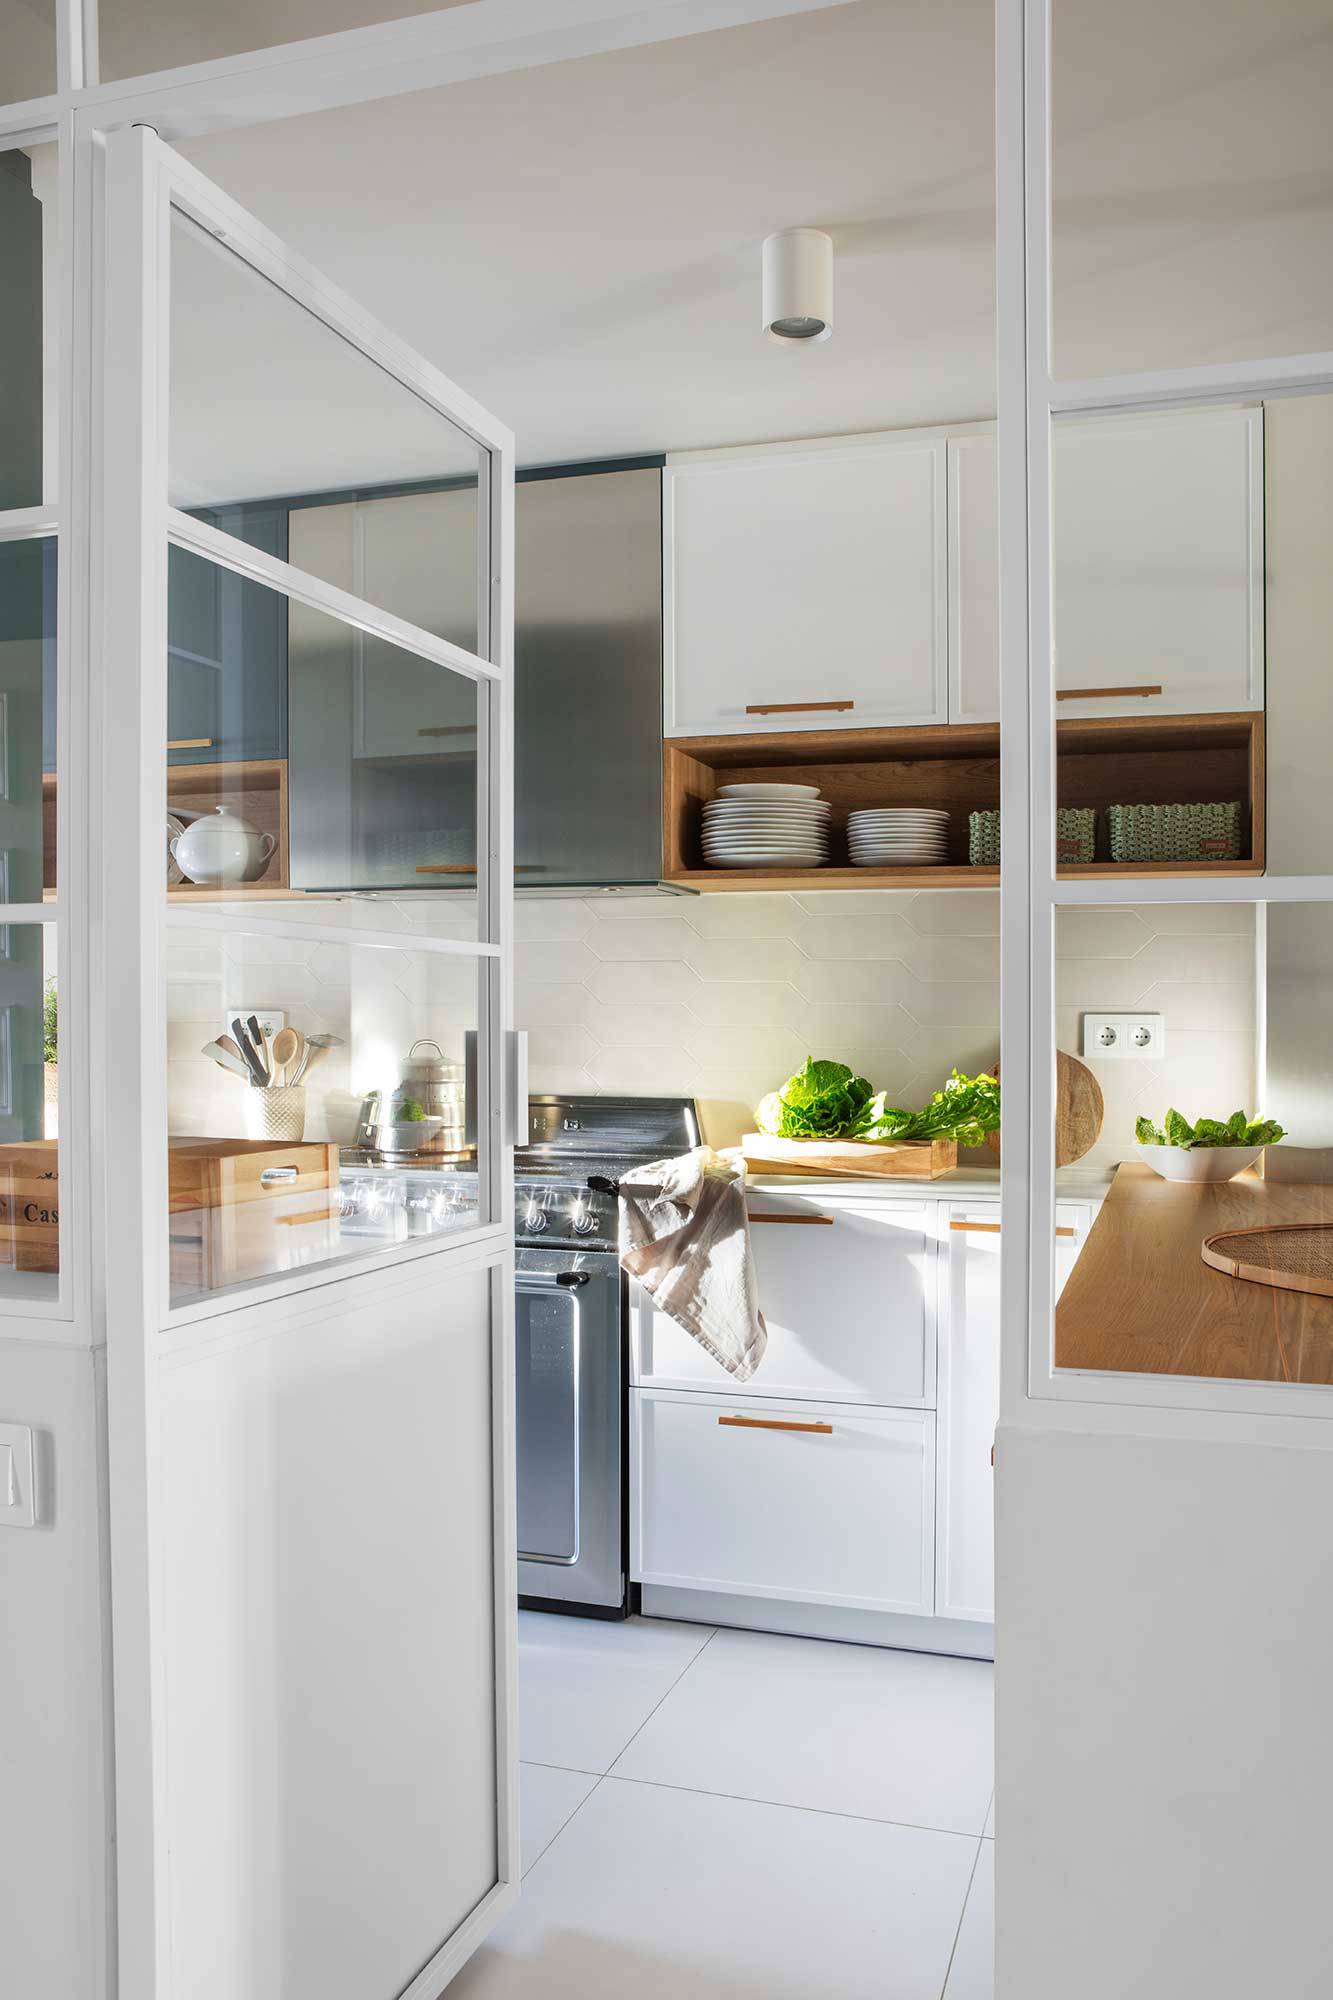 Cocina-con-puerta-acristalada-y-muebles-en-gris-y-blanco-00537099 O